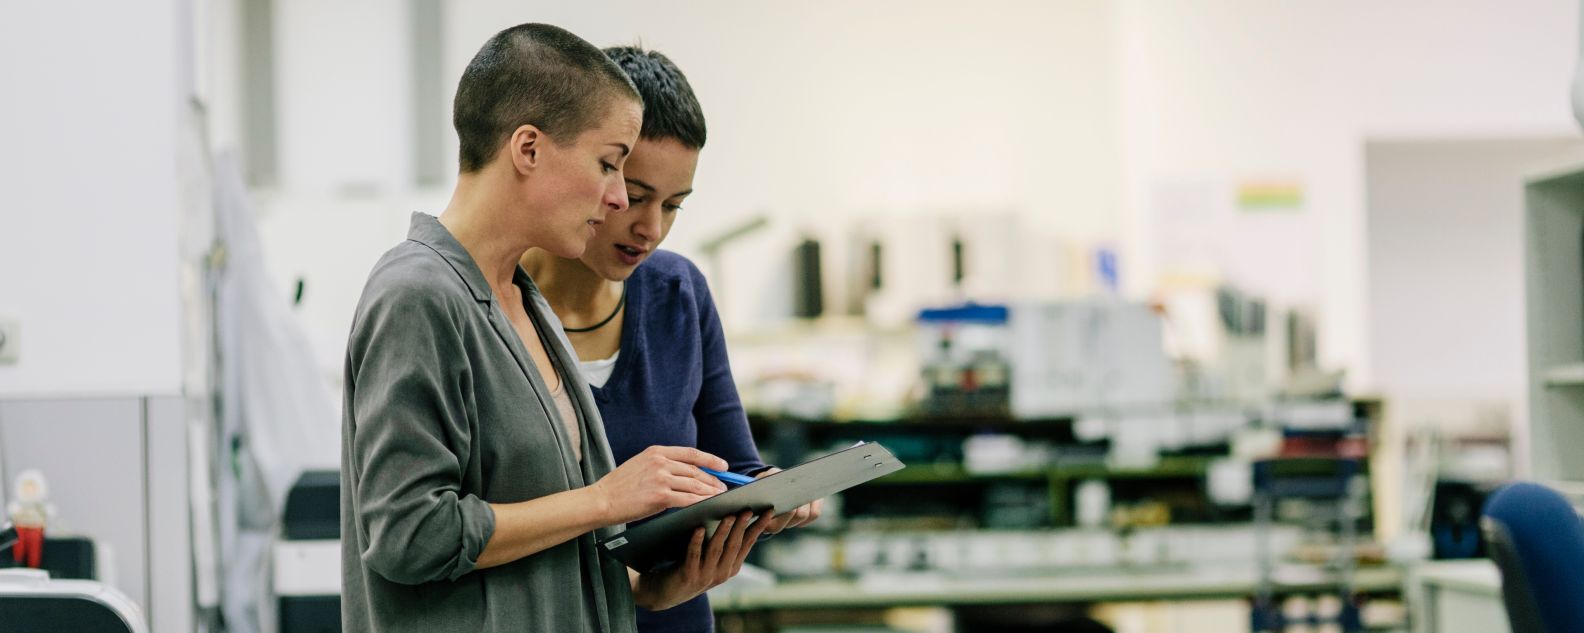 Dos trabajadores revisando información en un tablet